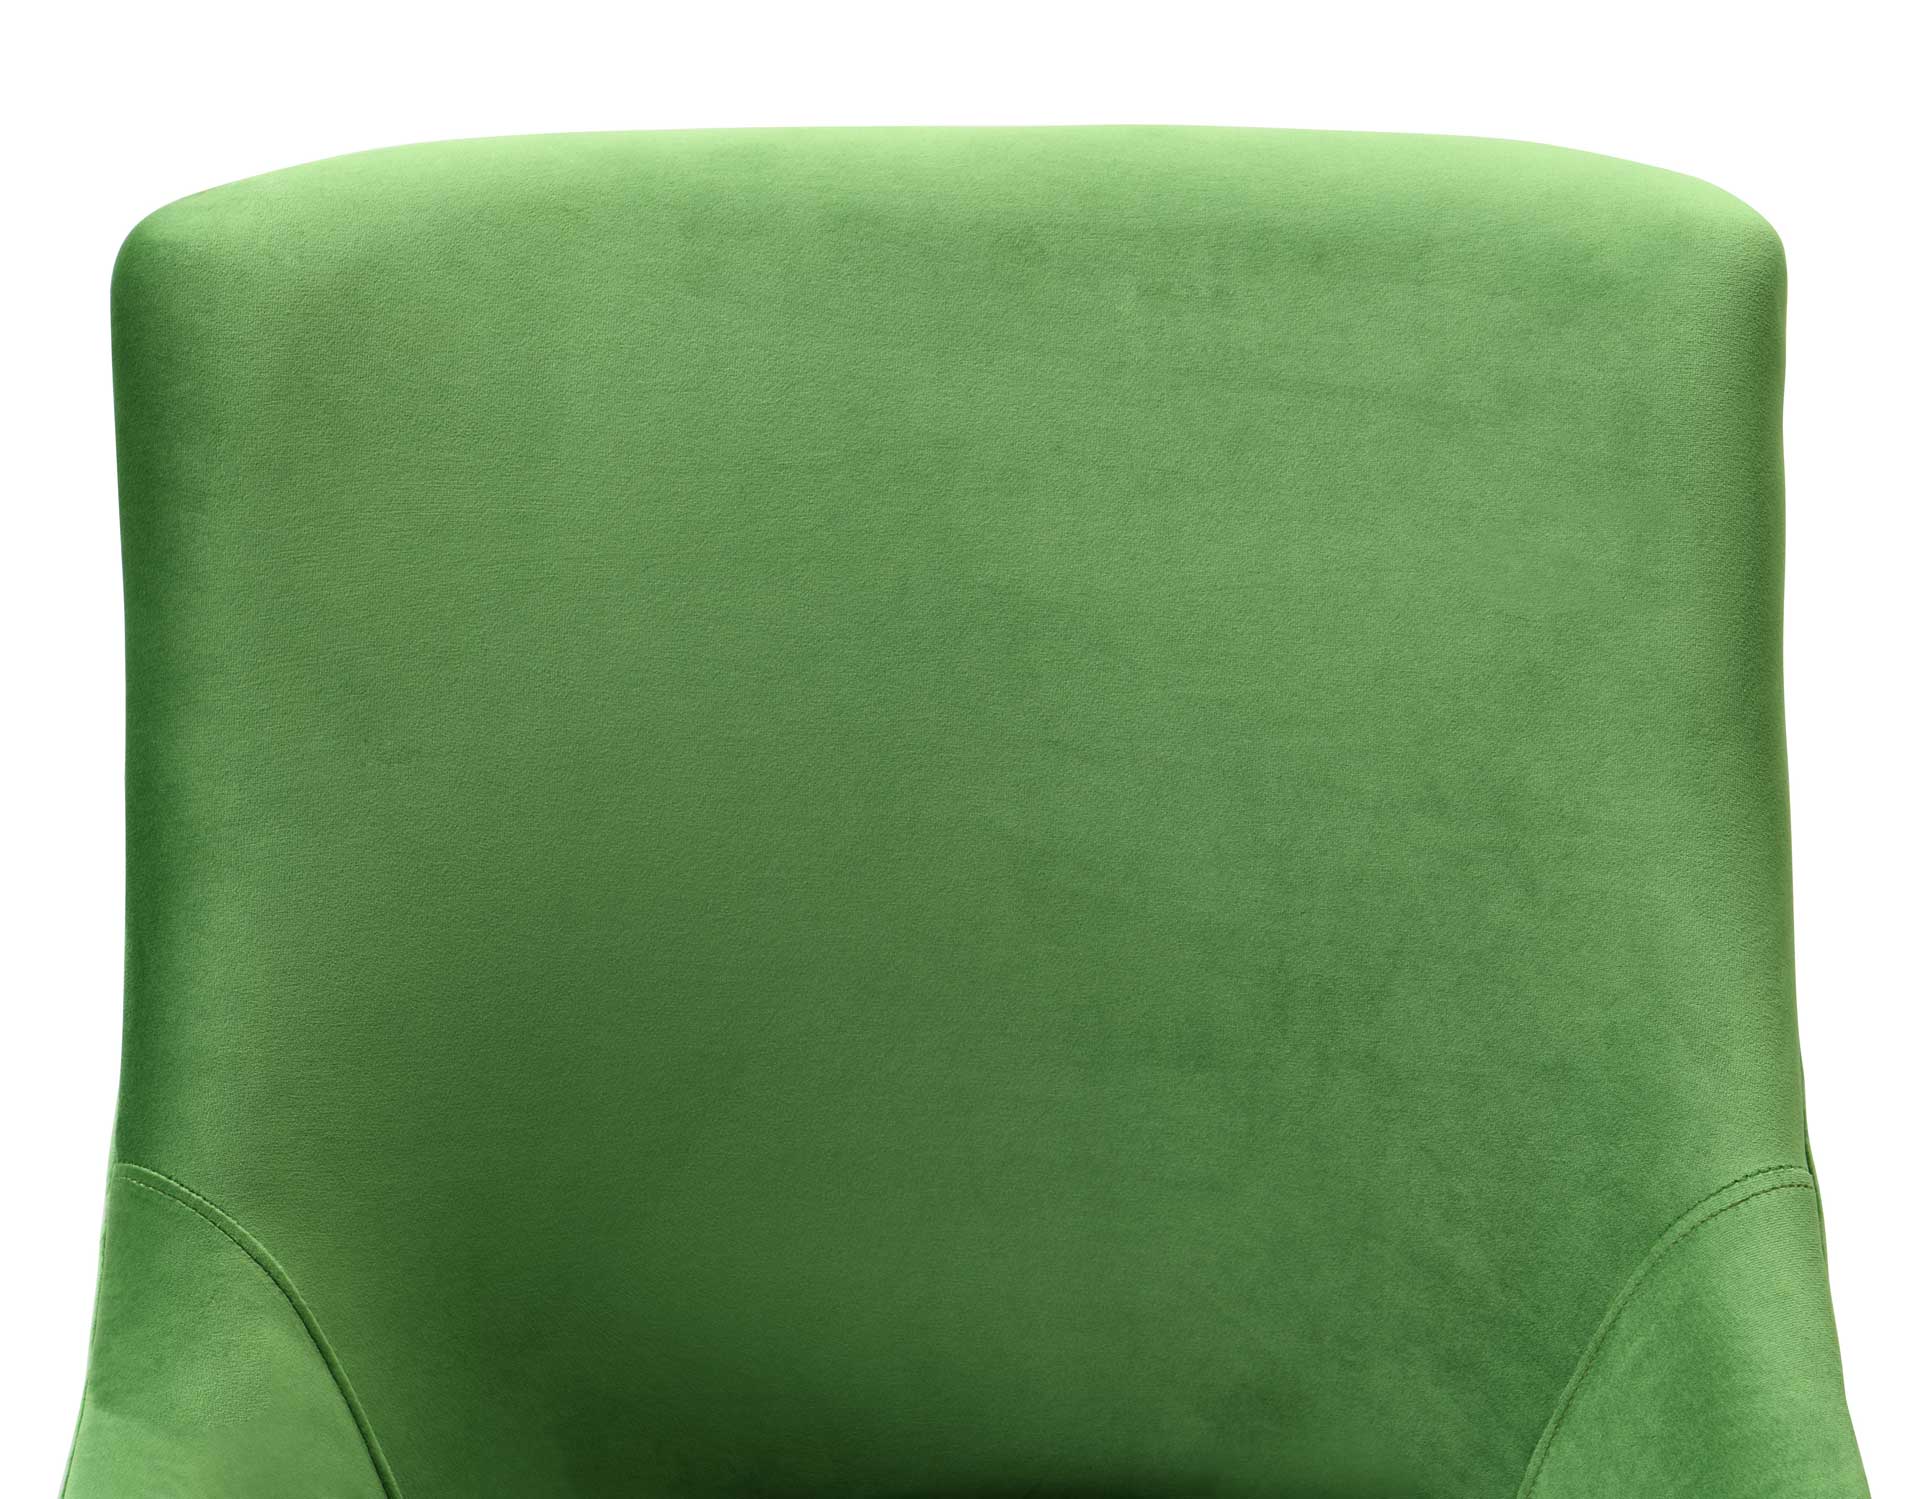 Bordeaux Office Swivel Chair Green